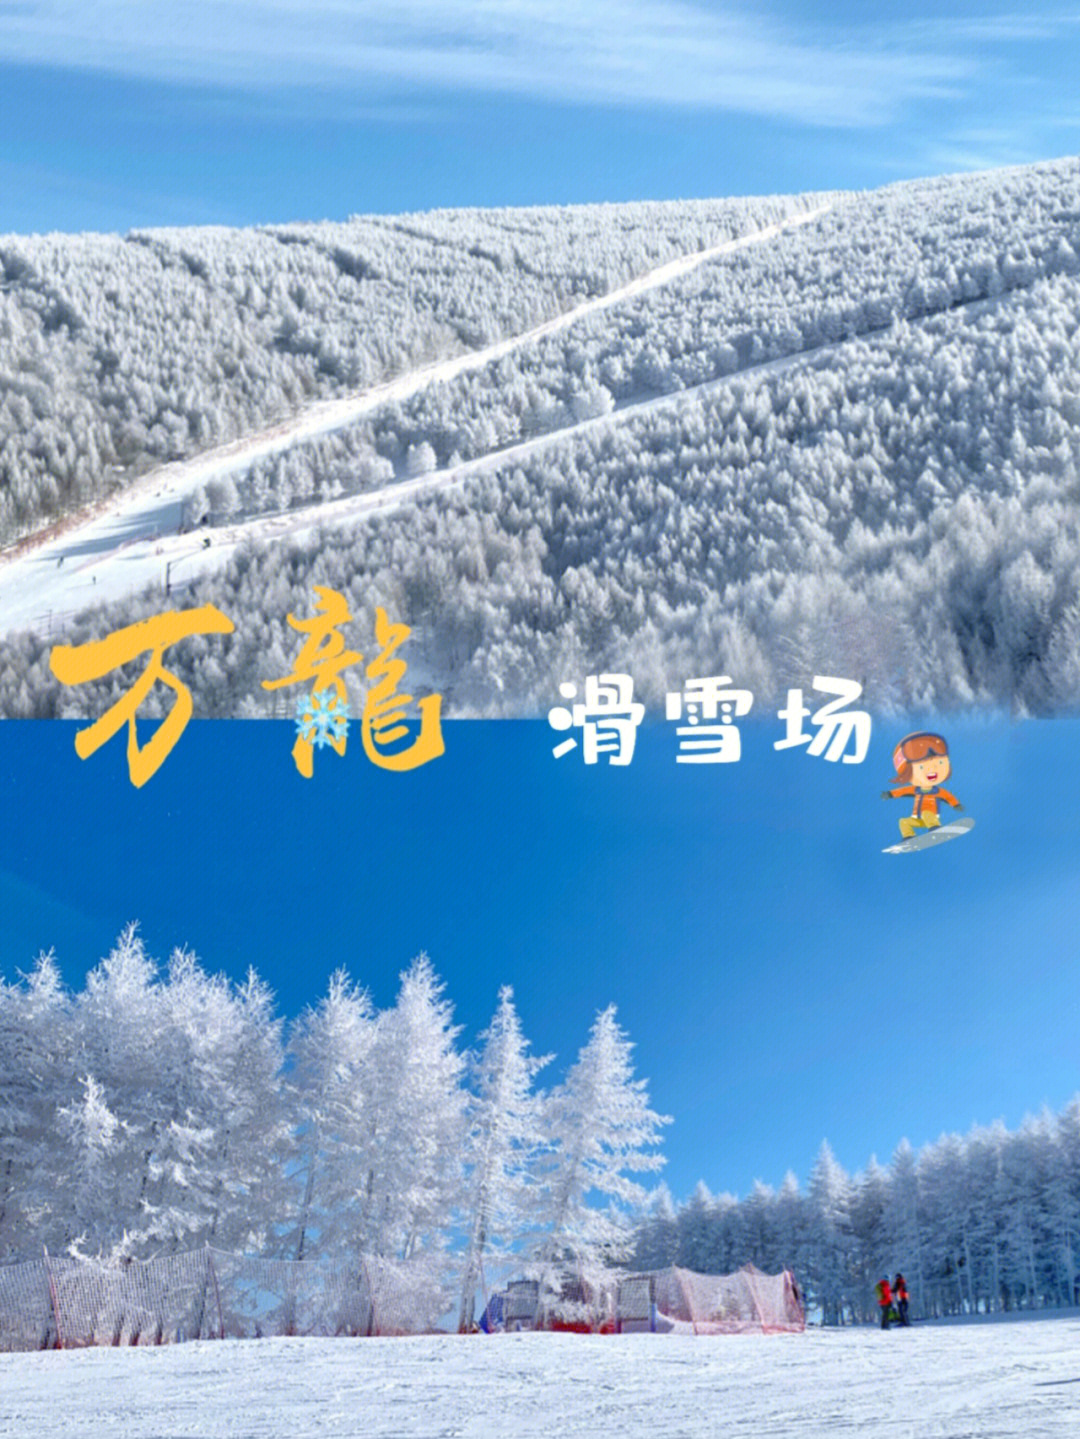 北京张家口崇礼top1万龙滑雪场366家酒店